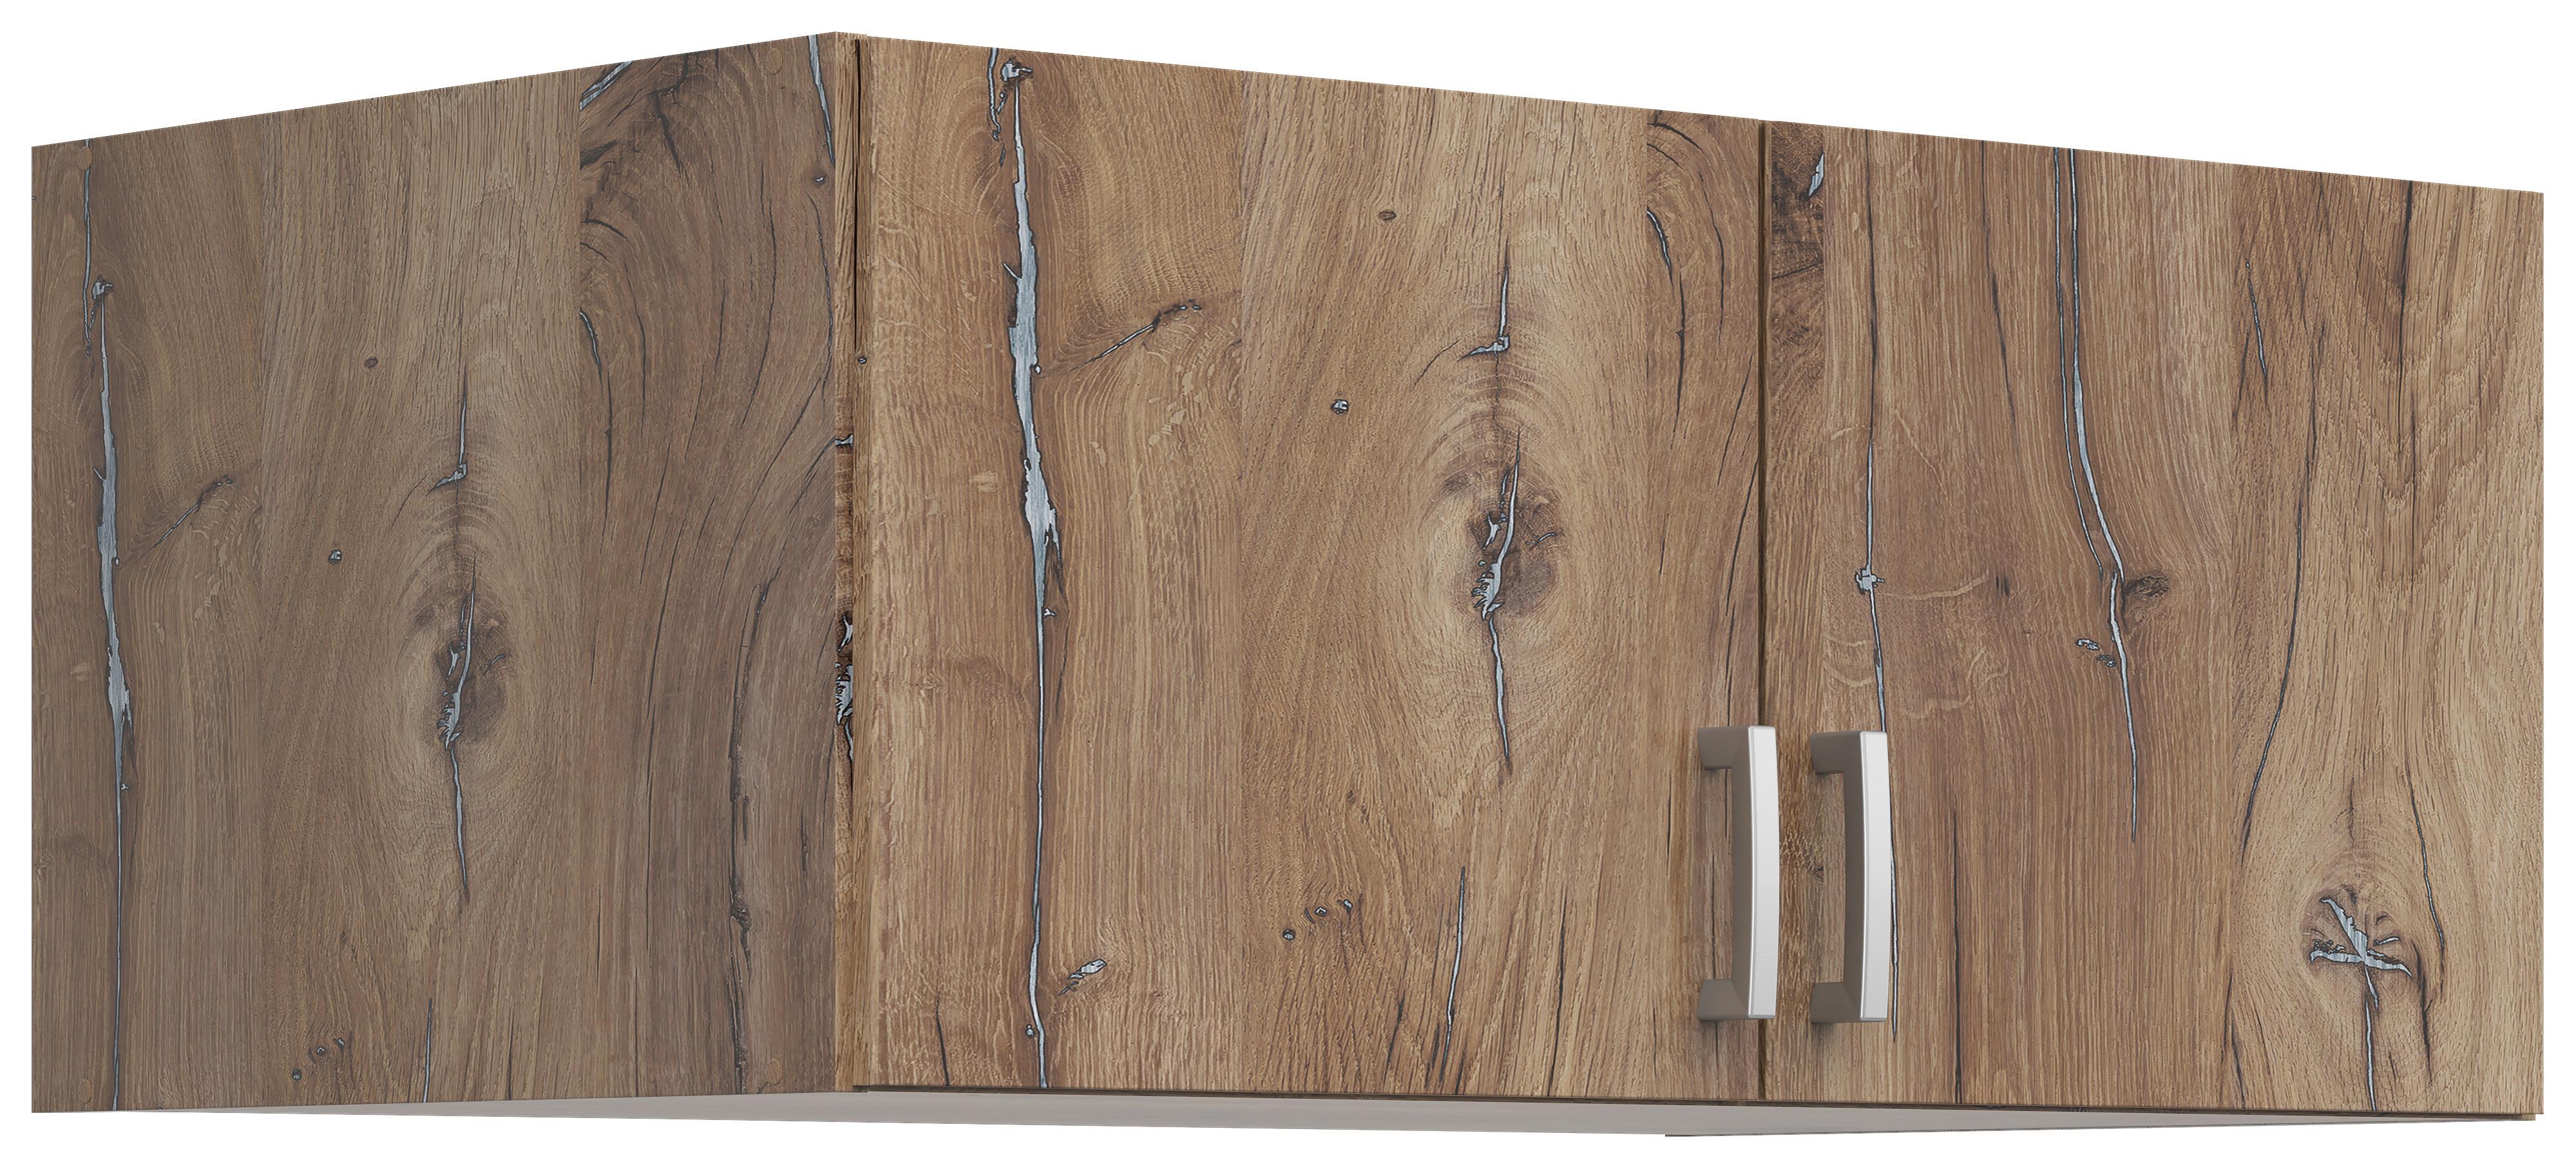 Nástavec Brando 91cm Dekor Dub Flagstaff - barvy dubu/barvy stříbra, Konvenční, kompozitní dřevo/plast (91/39/54cm)